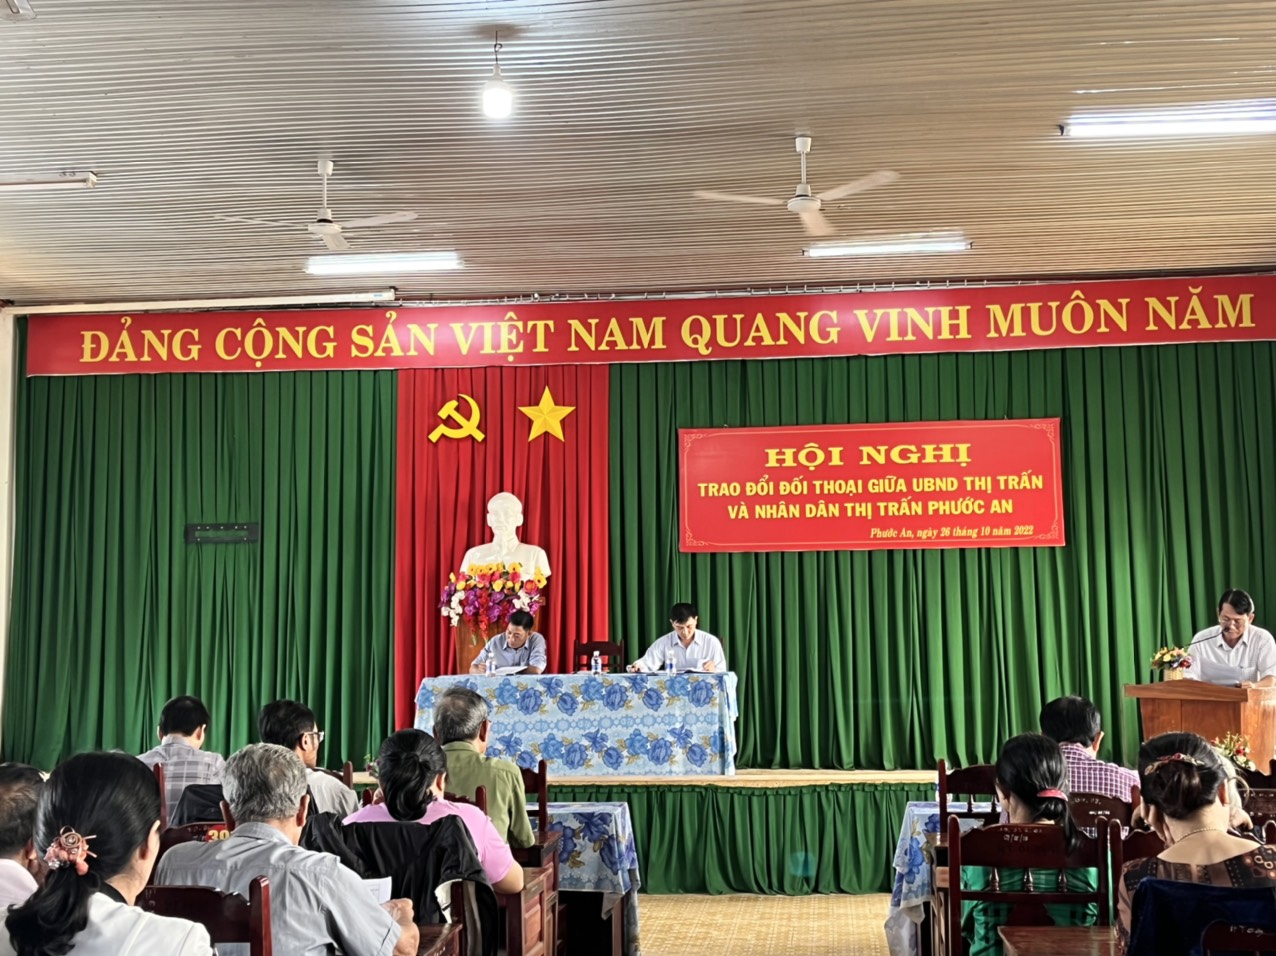 UBND  thị trấn Phước An tổ chức Hội nghị trao đổi đối thoại giữa UBND thị trấn và nhân dân thị trấn Phước An